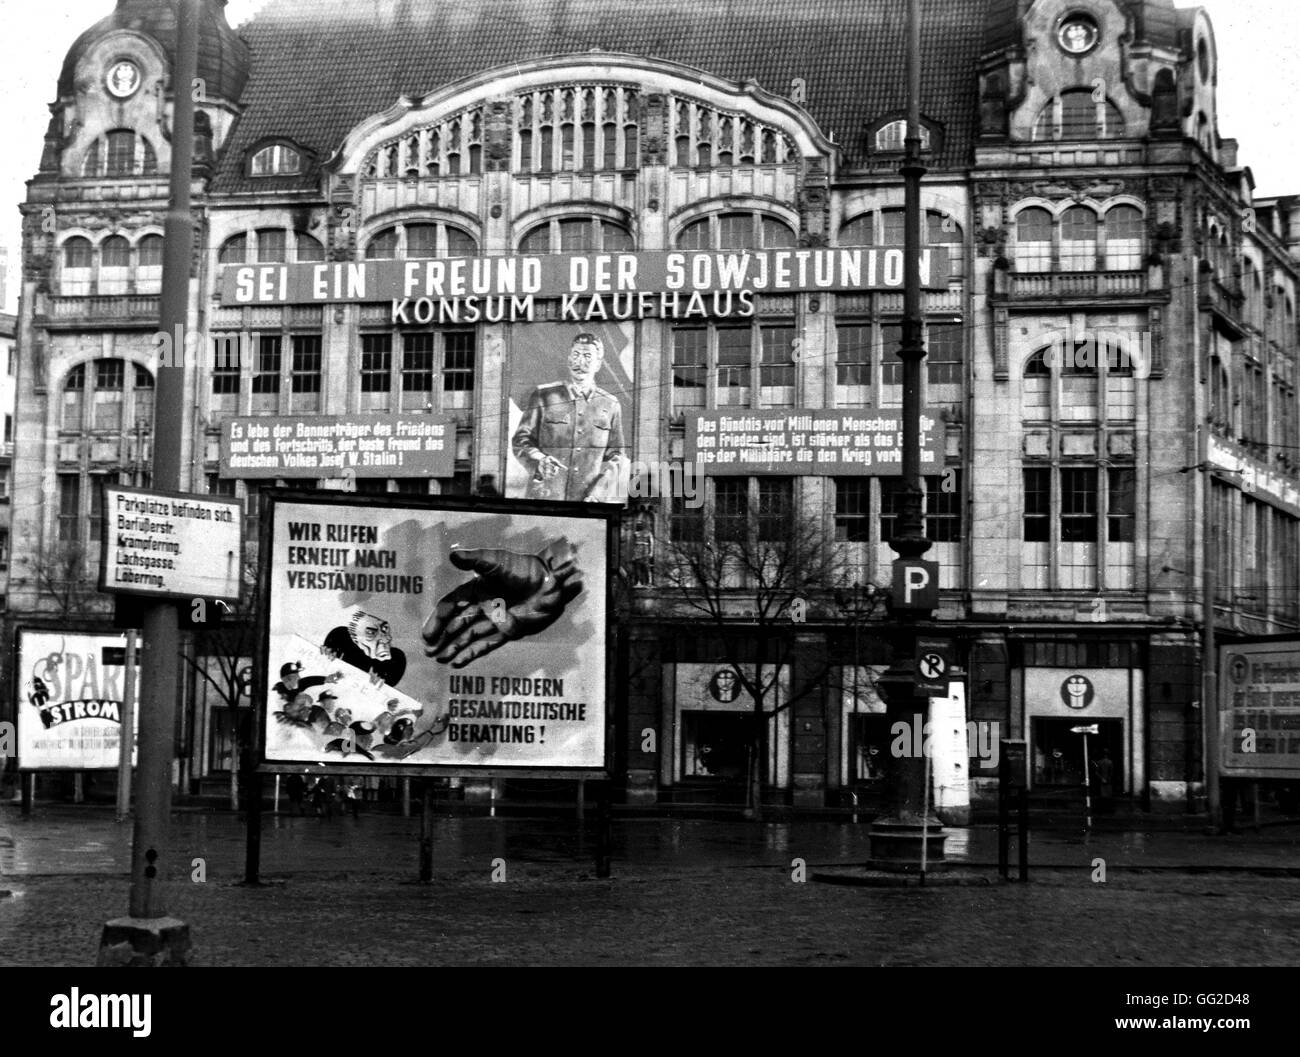 Ost-Berlin: Propaganda in der sowjetischen Besatzungszone c.1950 der Deutschen Demokratischen Republik (DDR) Stockfoto